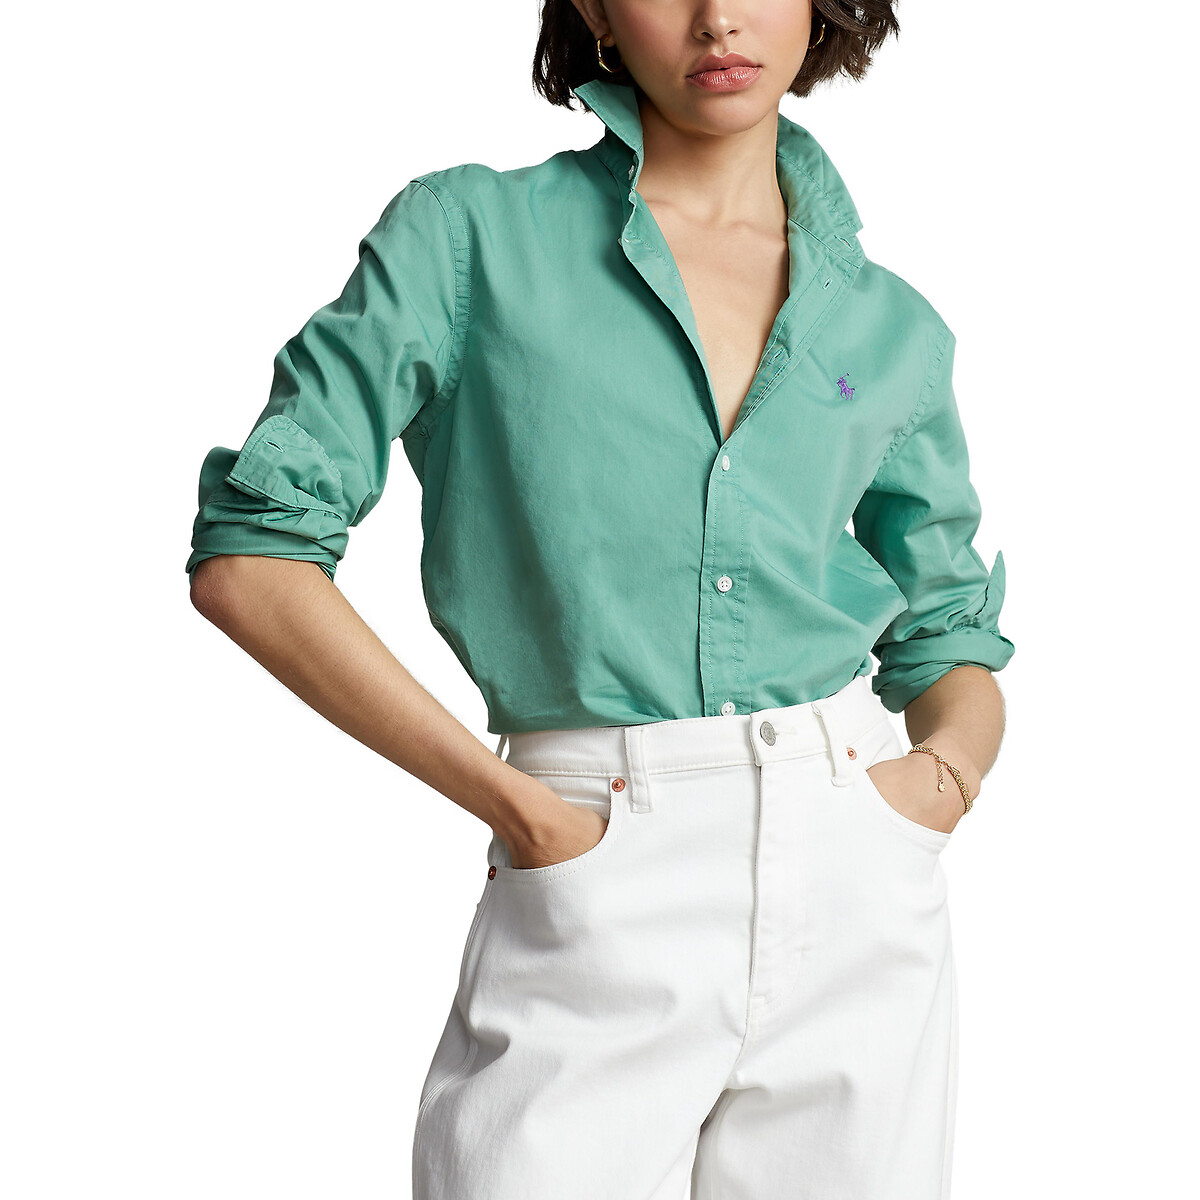 

Блузка POLO RALPH LAUREN, Зеленый, Блузка С длинными рукавами S зеленый